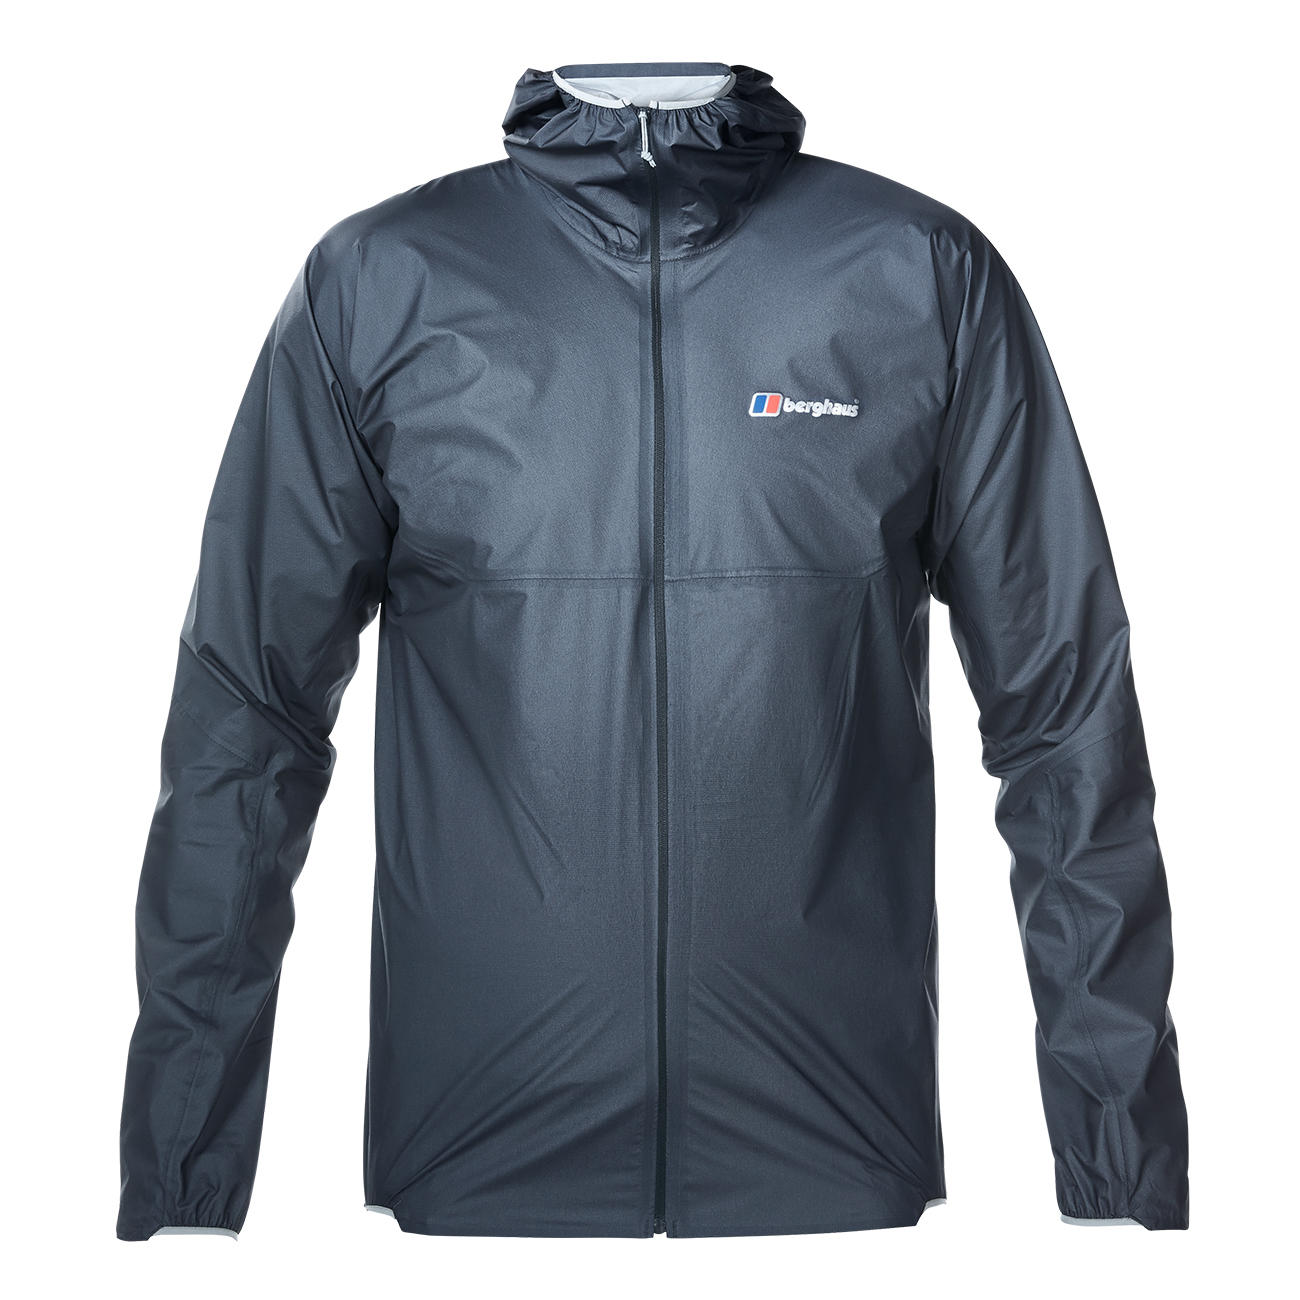 Berghaus Ultralight Outdoor Jacket online